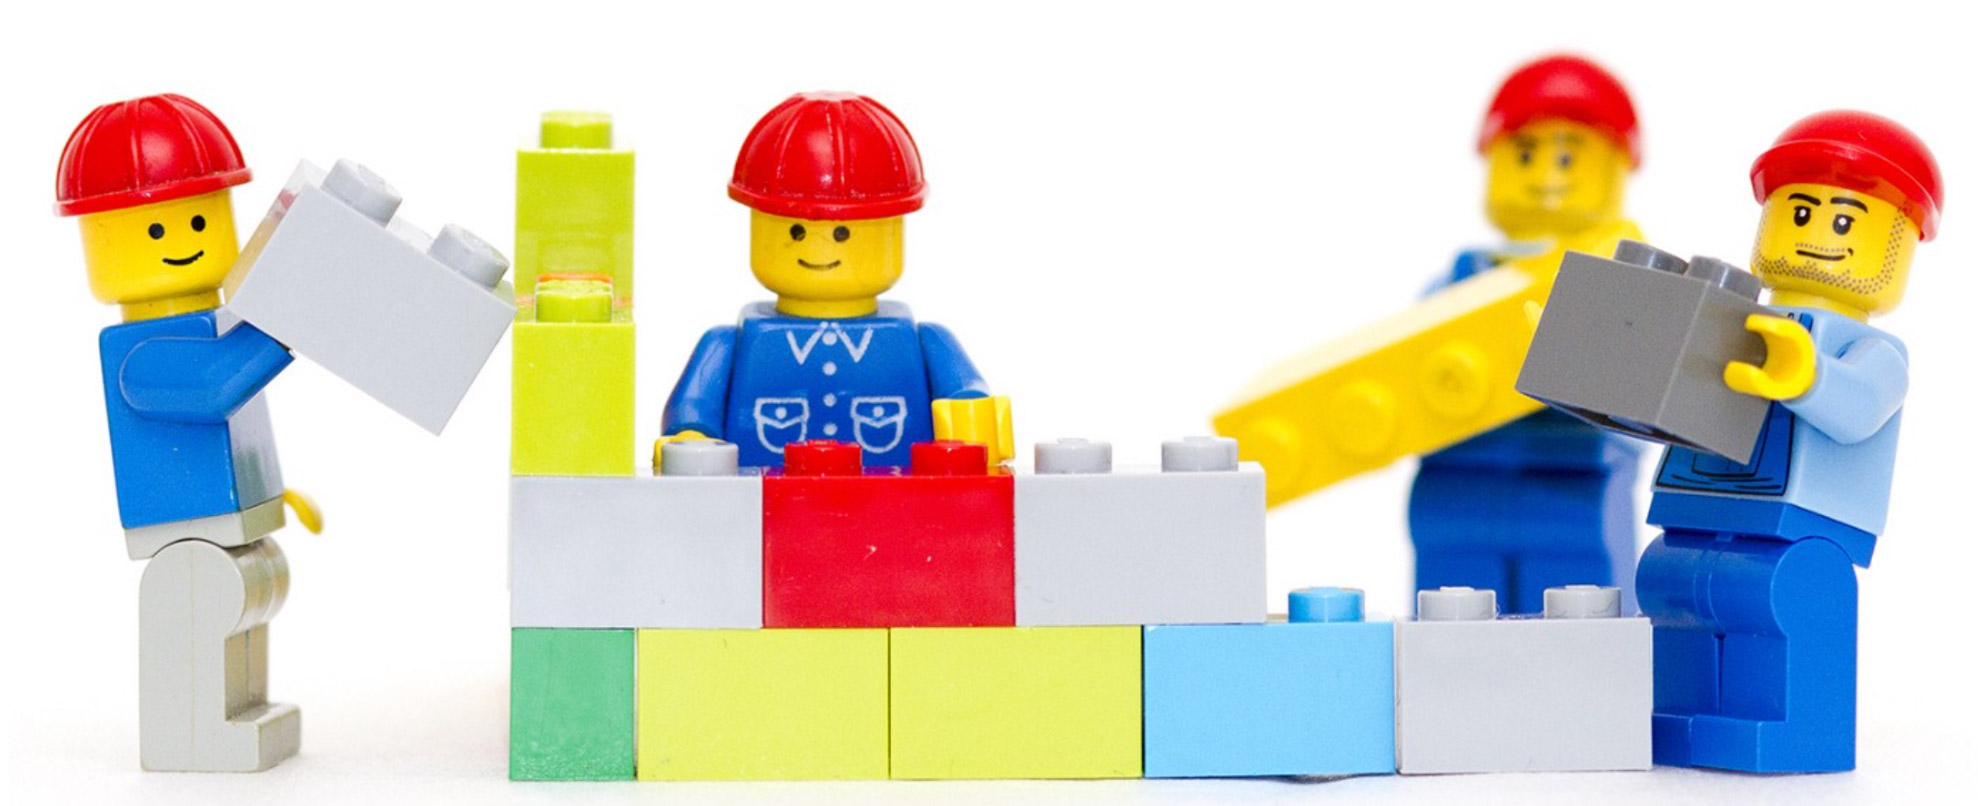 Lego image example